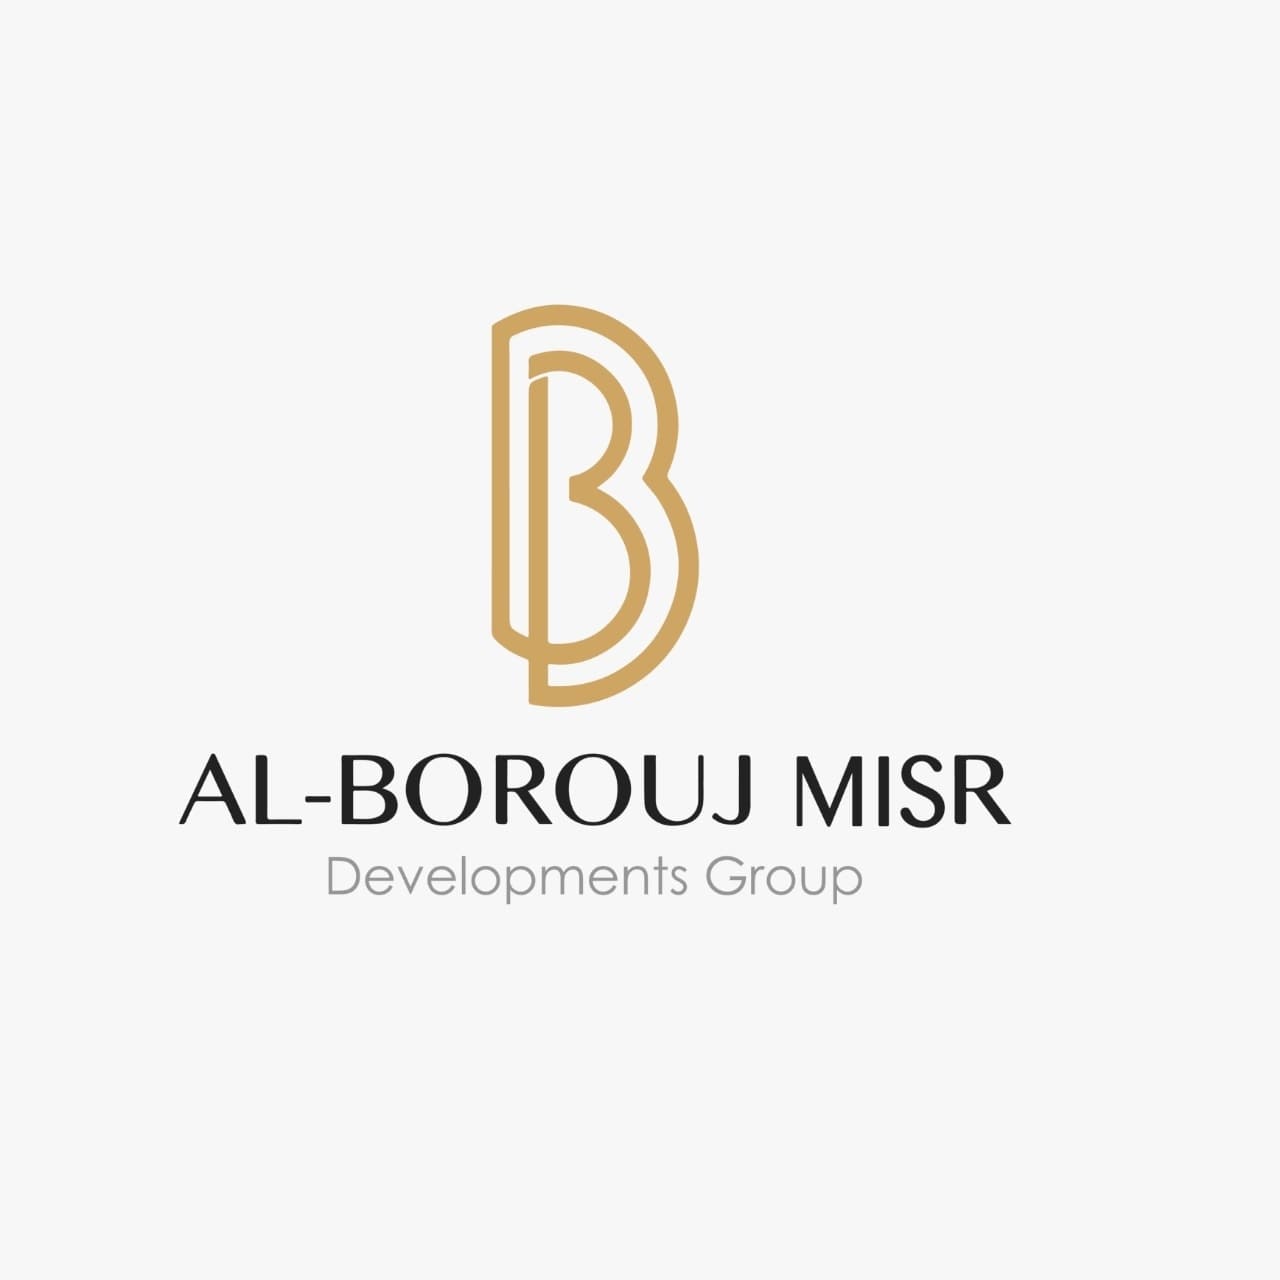 البروج للتطوير العقاري - Al Borouj Misr Developments